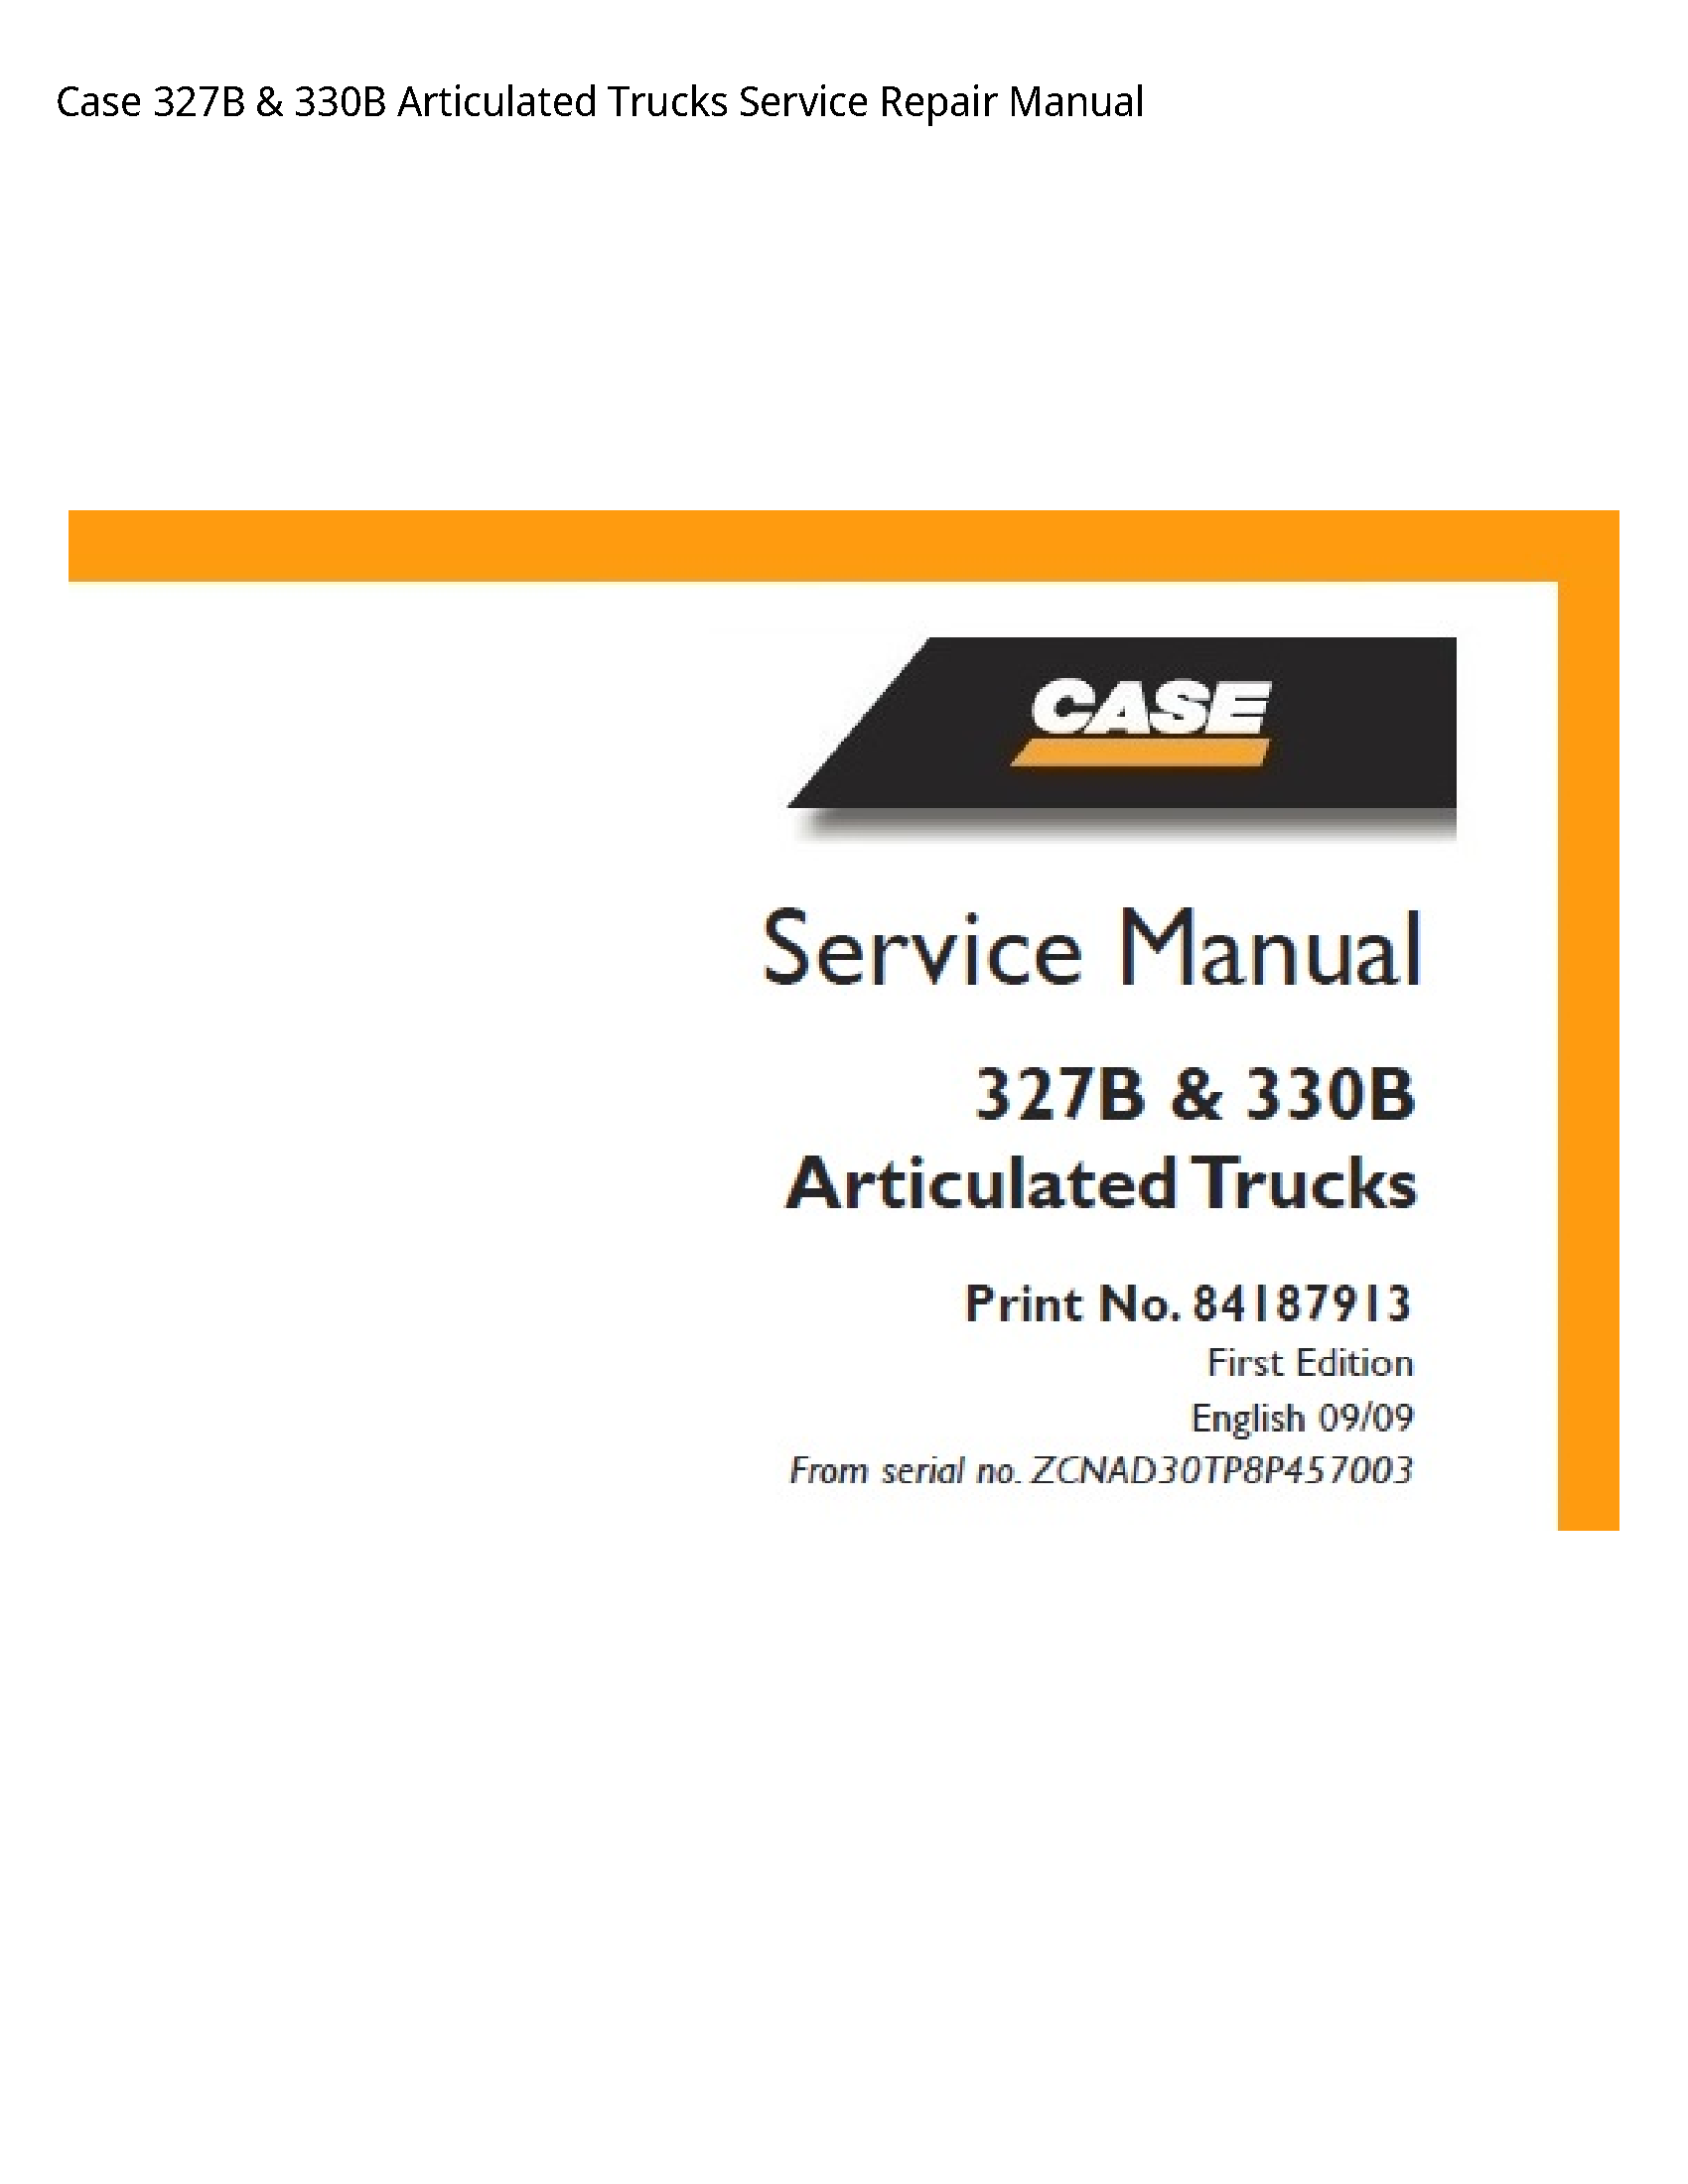 Case/Case IH 327B Articulated Trucks manual